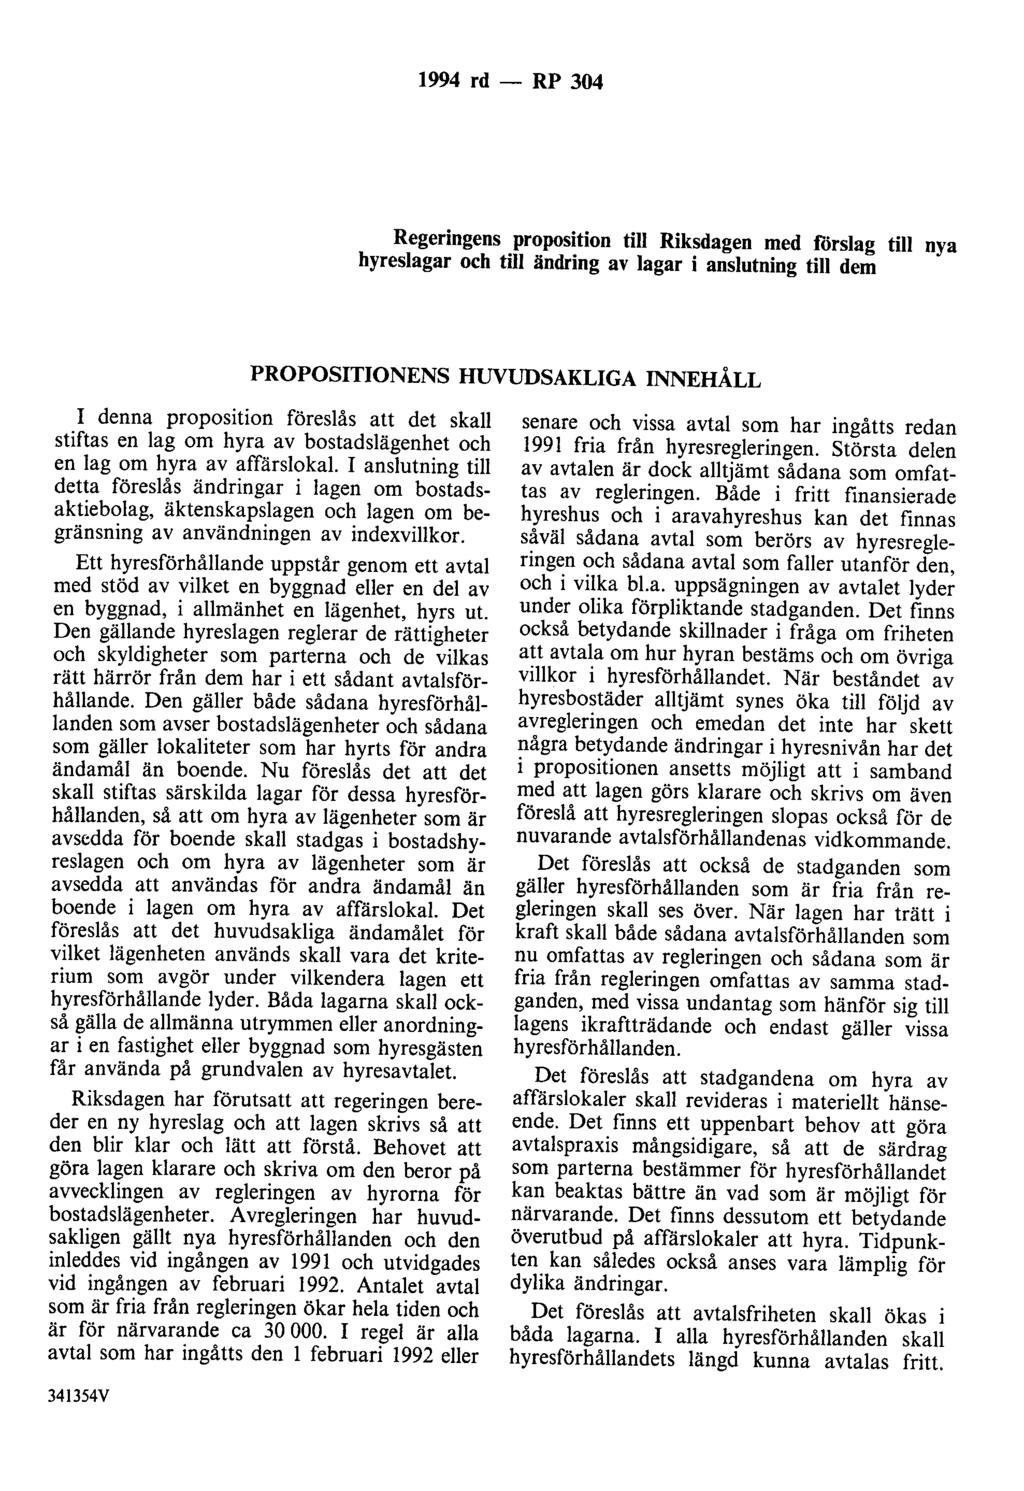 1994 rd- RP 304 Regeringens proposition till Riksdagen med förslag till nya hyreslagar och till ändring av lagar i anslutning till dem PROPOSITIONENS HUVUDSAKLIGA INNEHÅLL I denna proposition